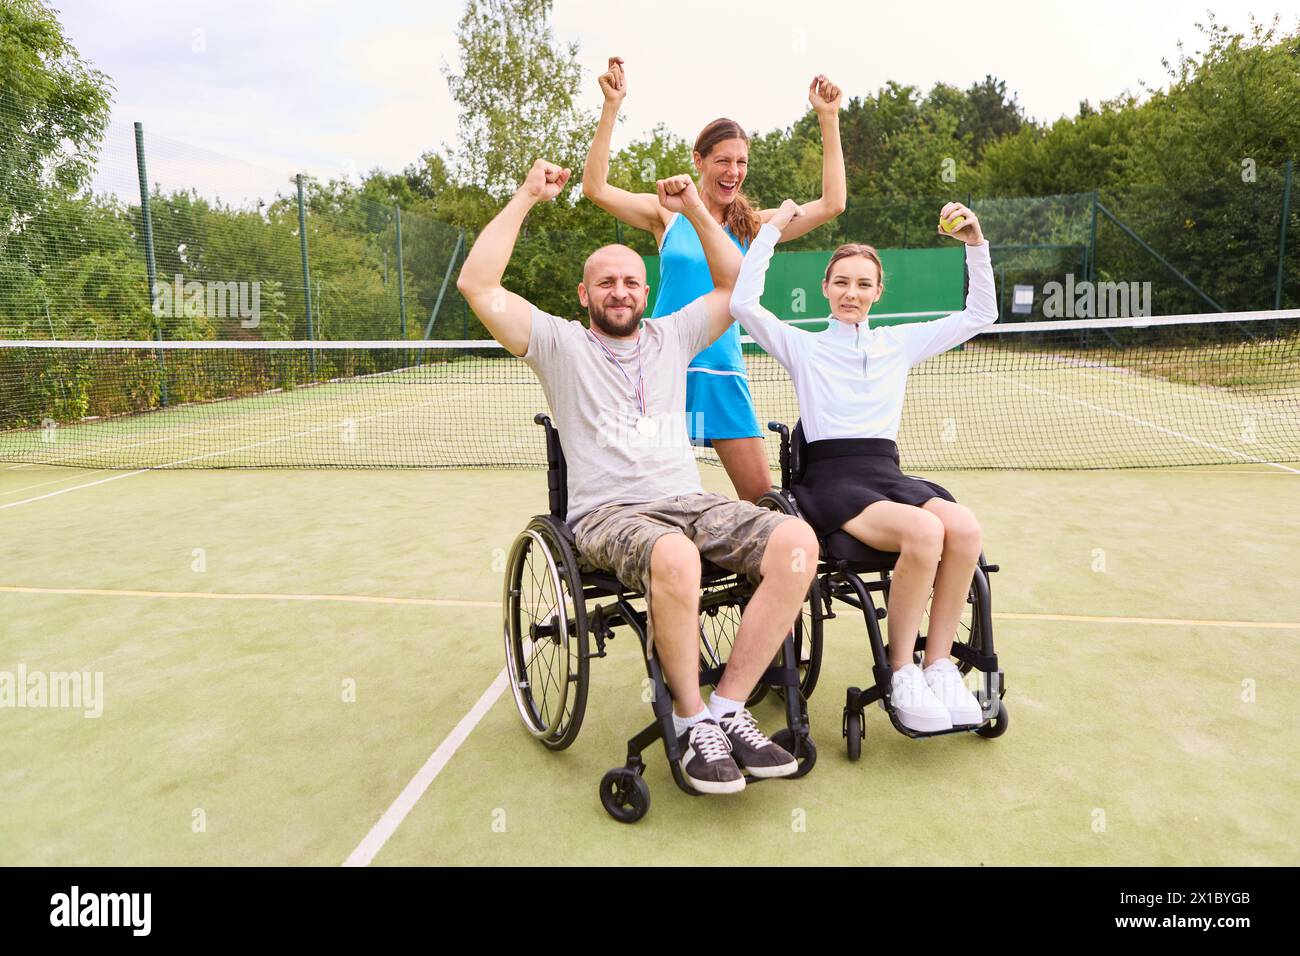 Un allegro gruppo di tre amici, tra cui due persone su sedia a rotelle, che celebrano una vittoria su un campo da tennis all'aperto, mostrando gioia e accessi Foto Stock